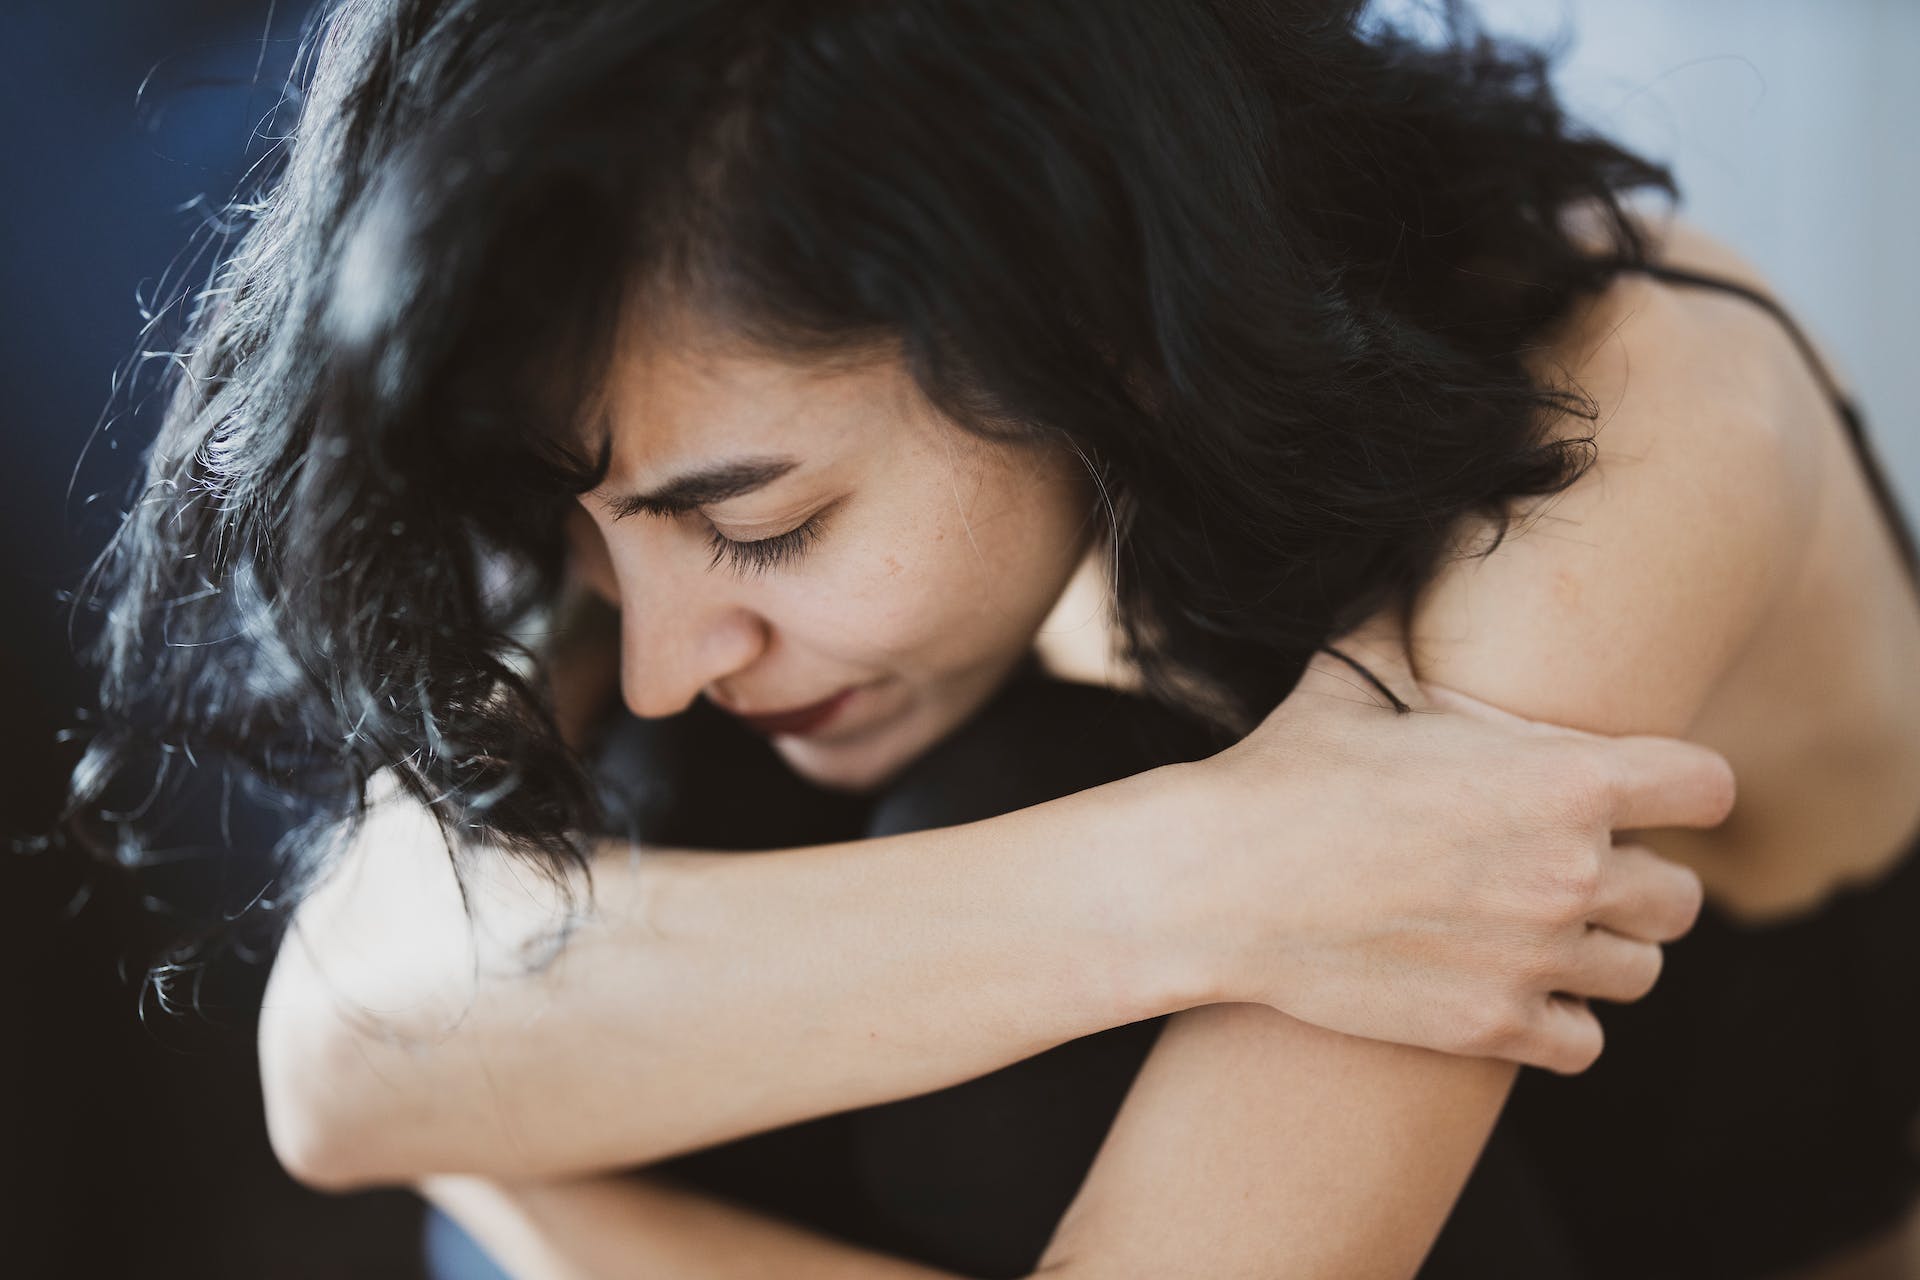 A depressed woman hugging her knees | Source: Pexels